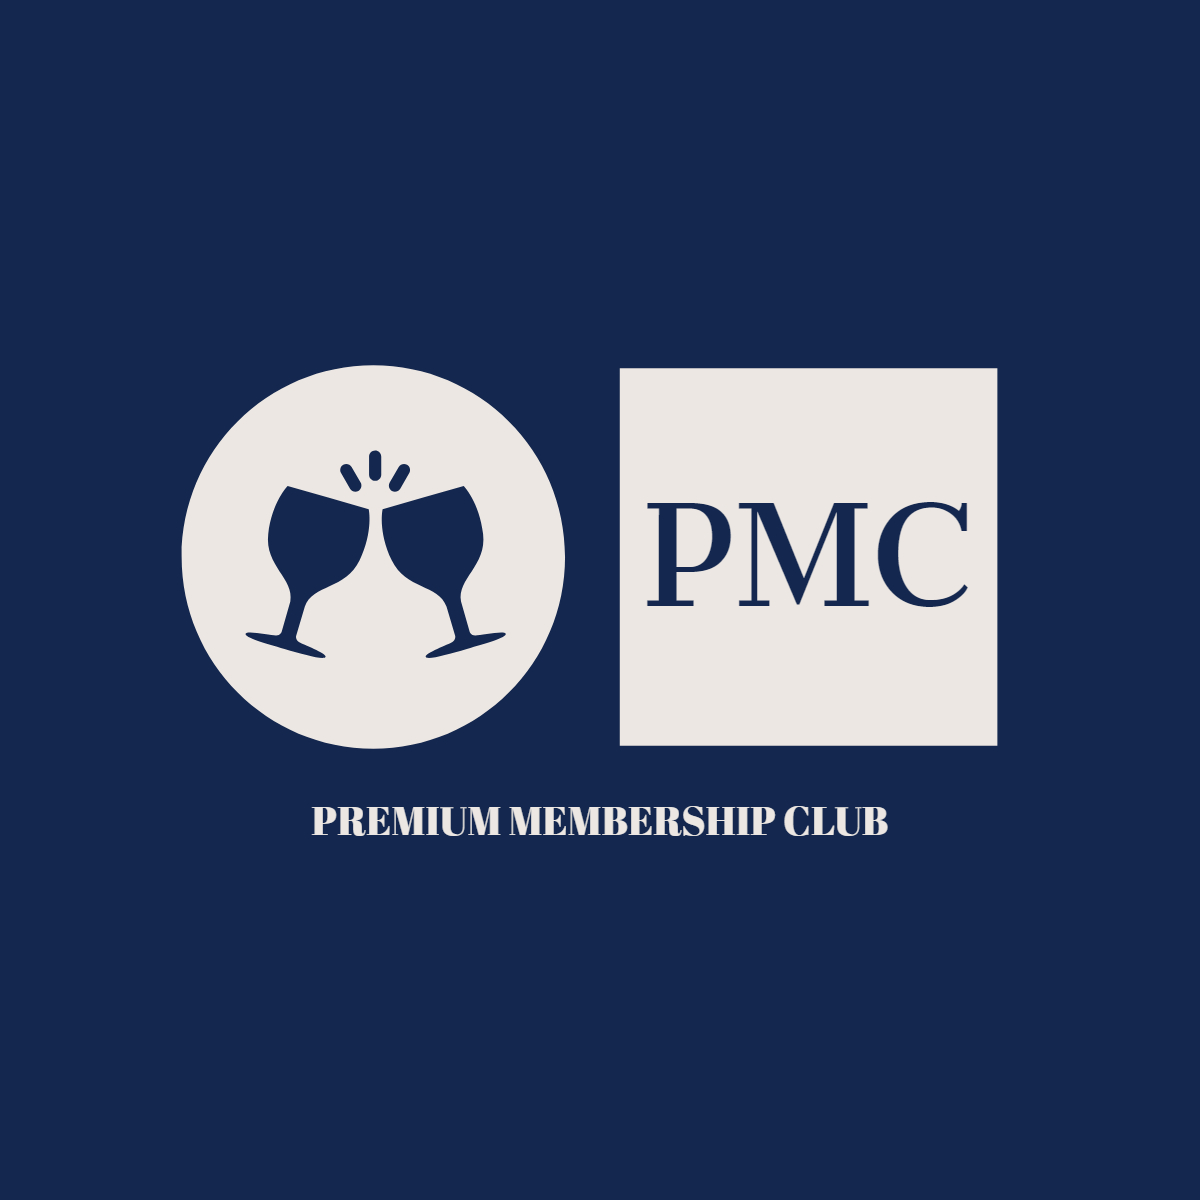 Premium Membership Club logo